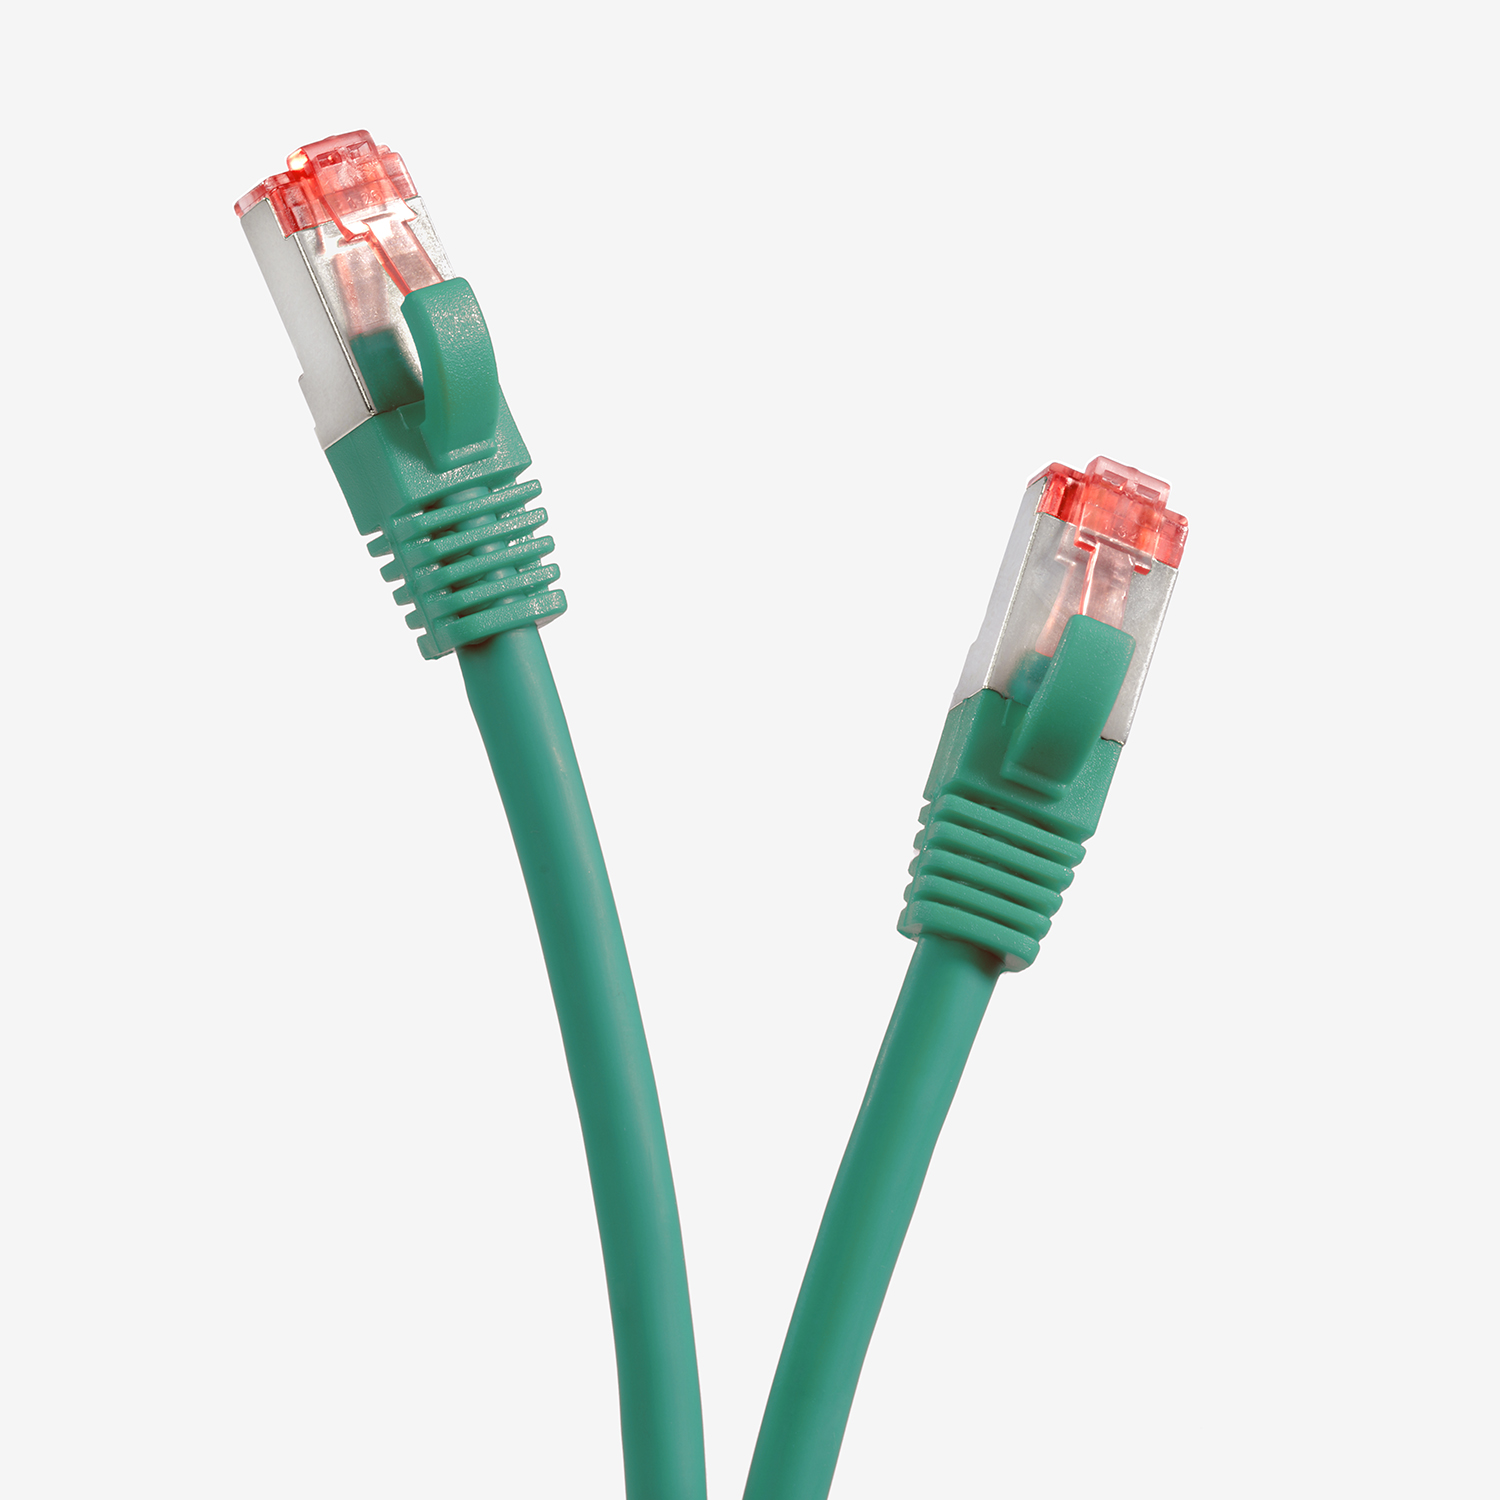 TPFNET 30m Patchkabel / Netzwerkkabel S/FTP m 30 Netzwerkkabel, 1000Mbit, grün